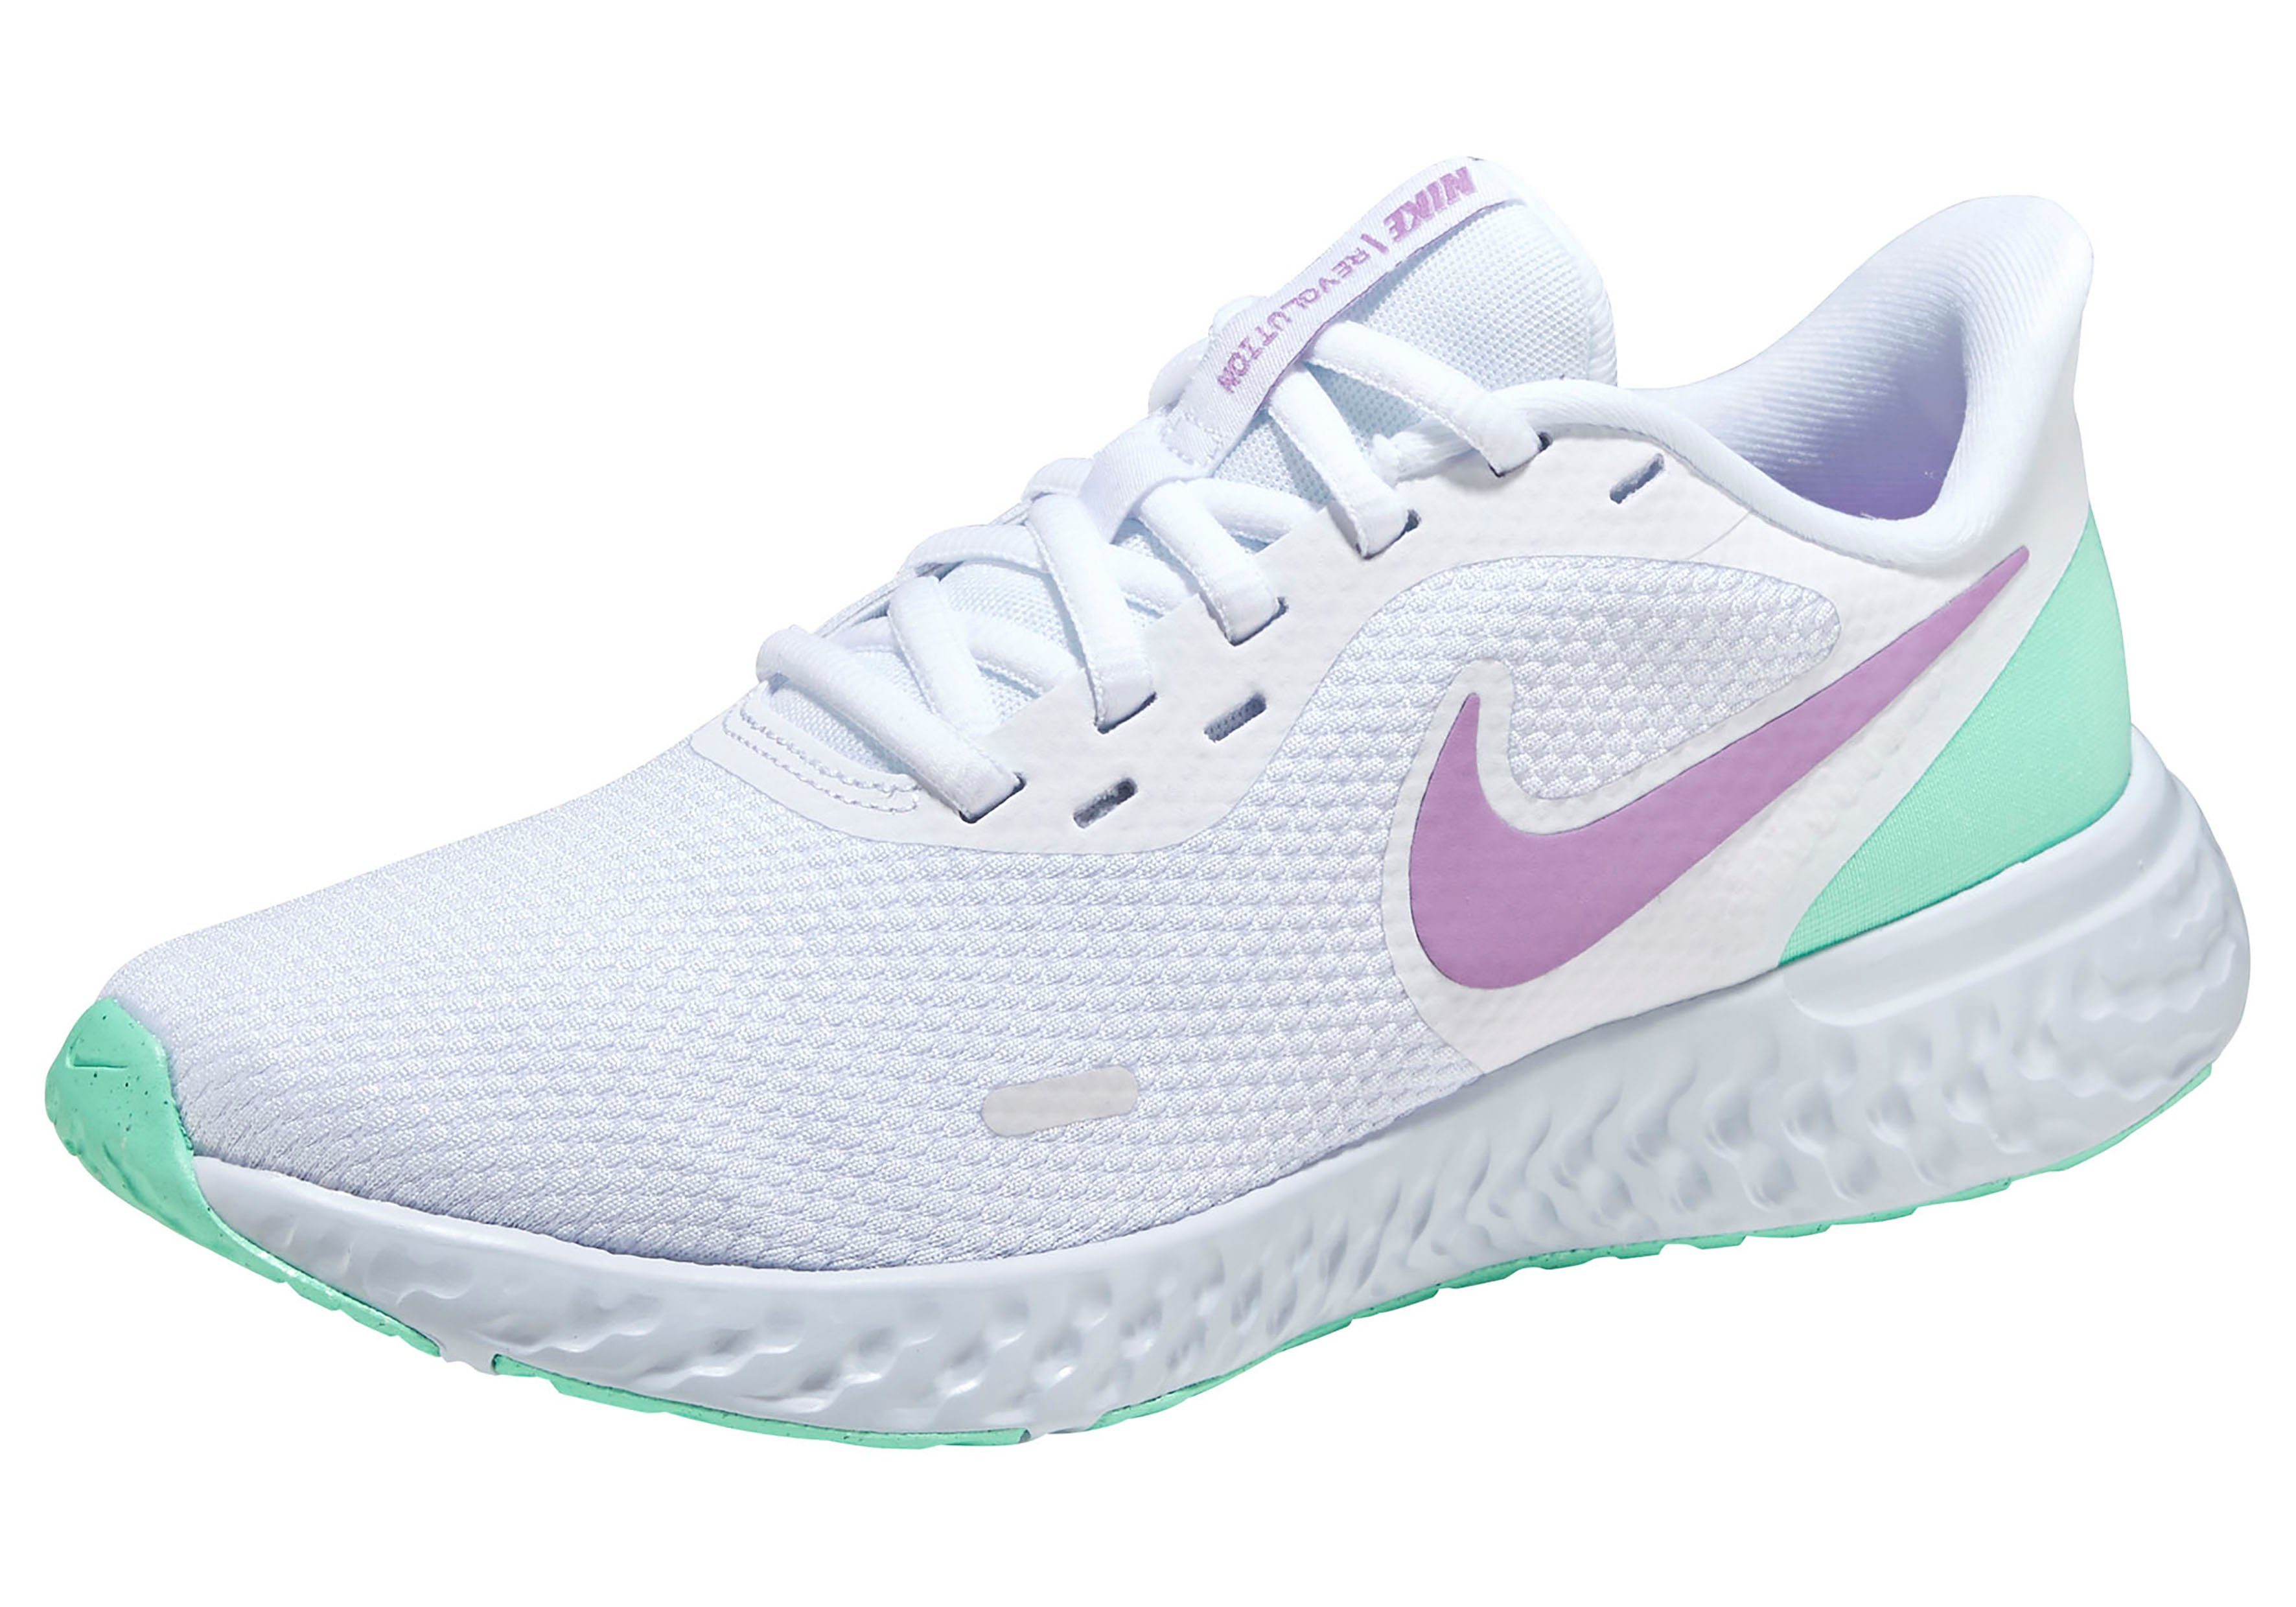 Nike Laufschuh Damen online kaufen | OTTO